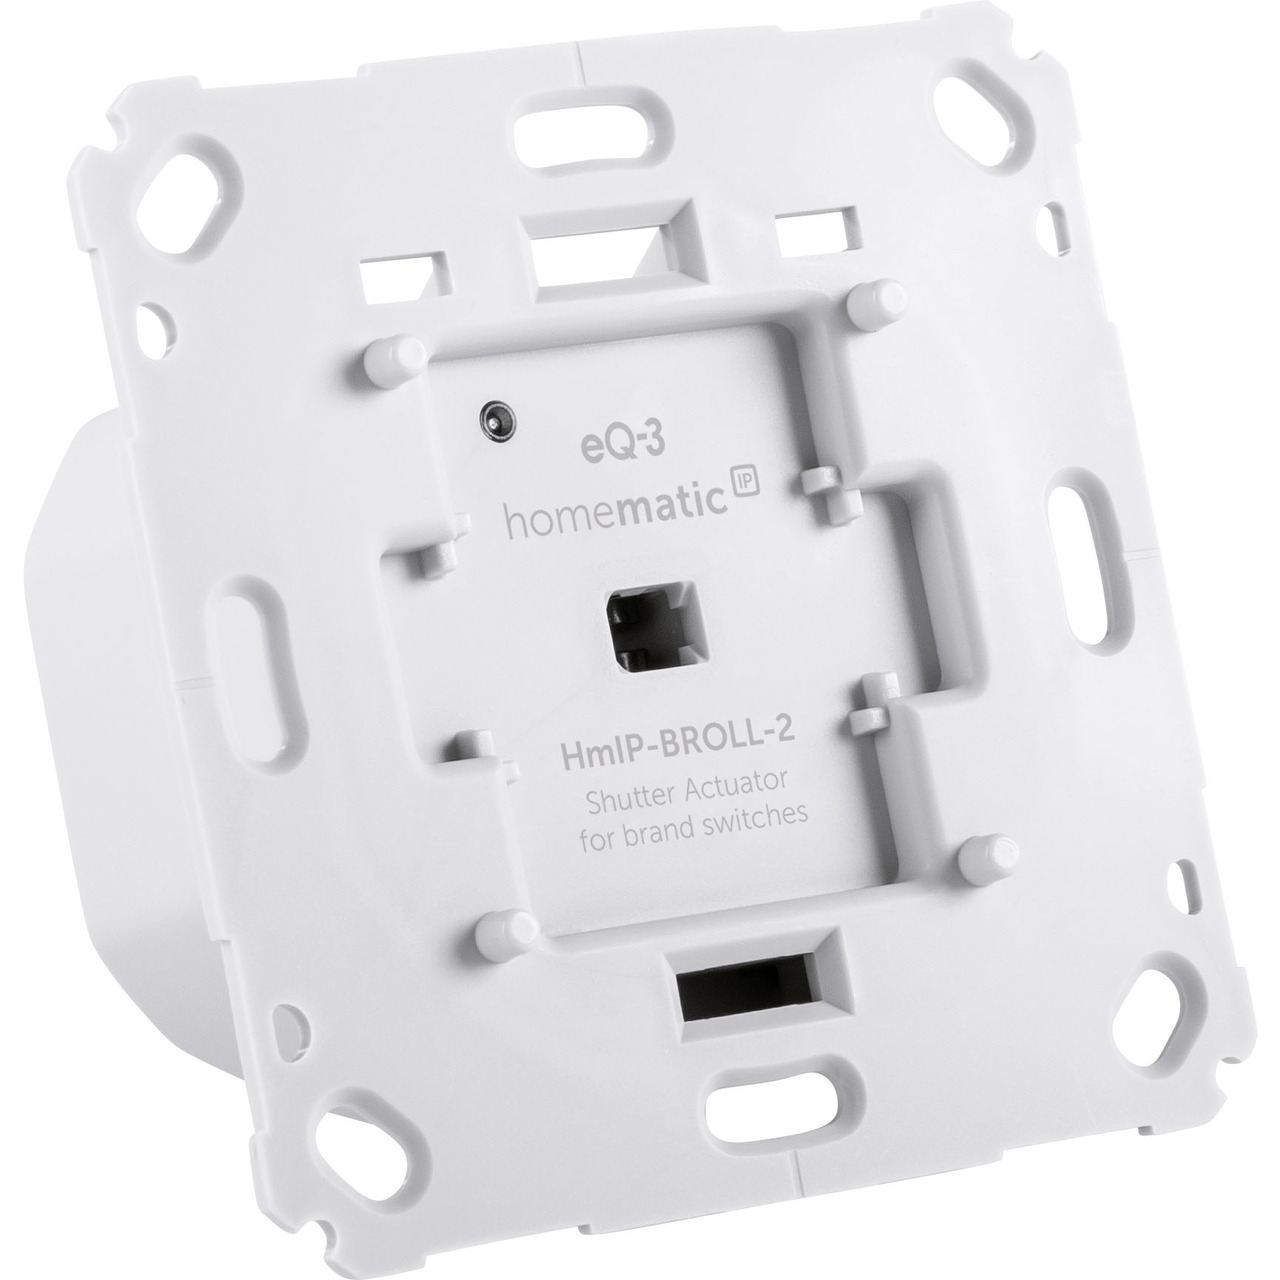 Homematic IP Smart Home Rollladenaktor HmIP-BROLL-2 für Markenschalter- auch für Markisen geeignet unter Hausautomation